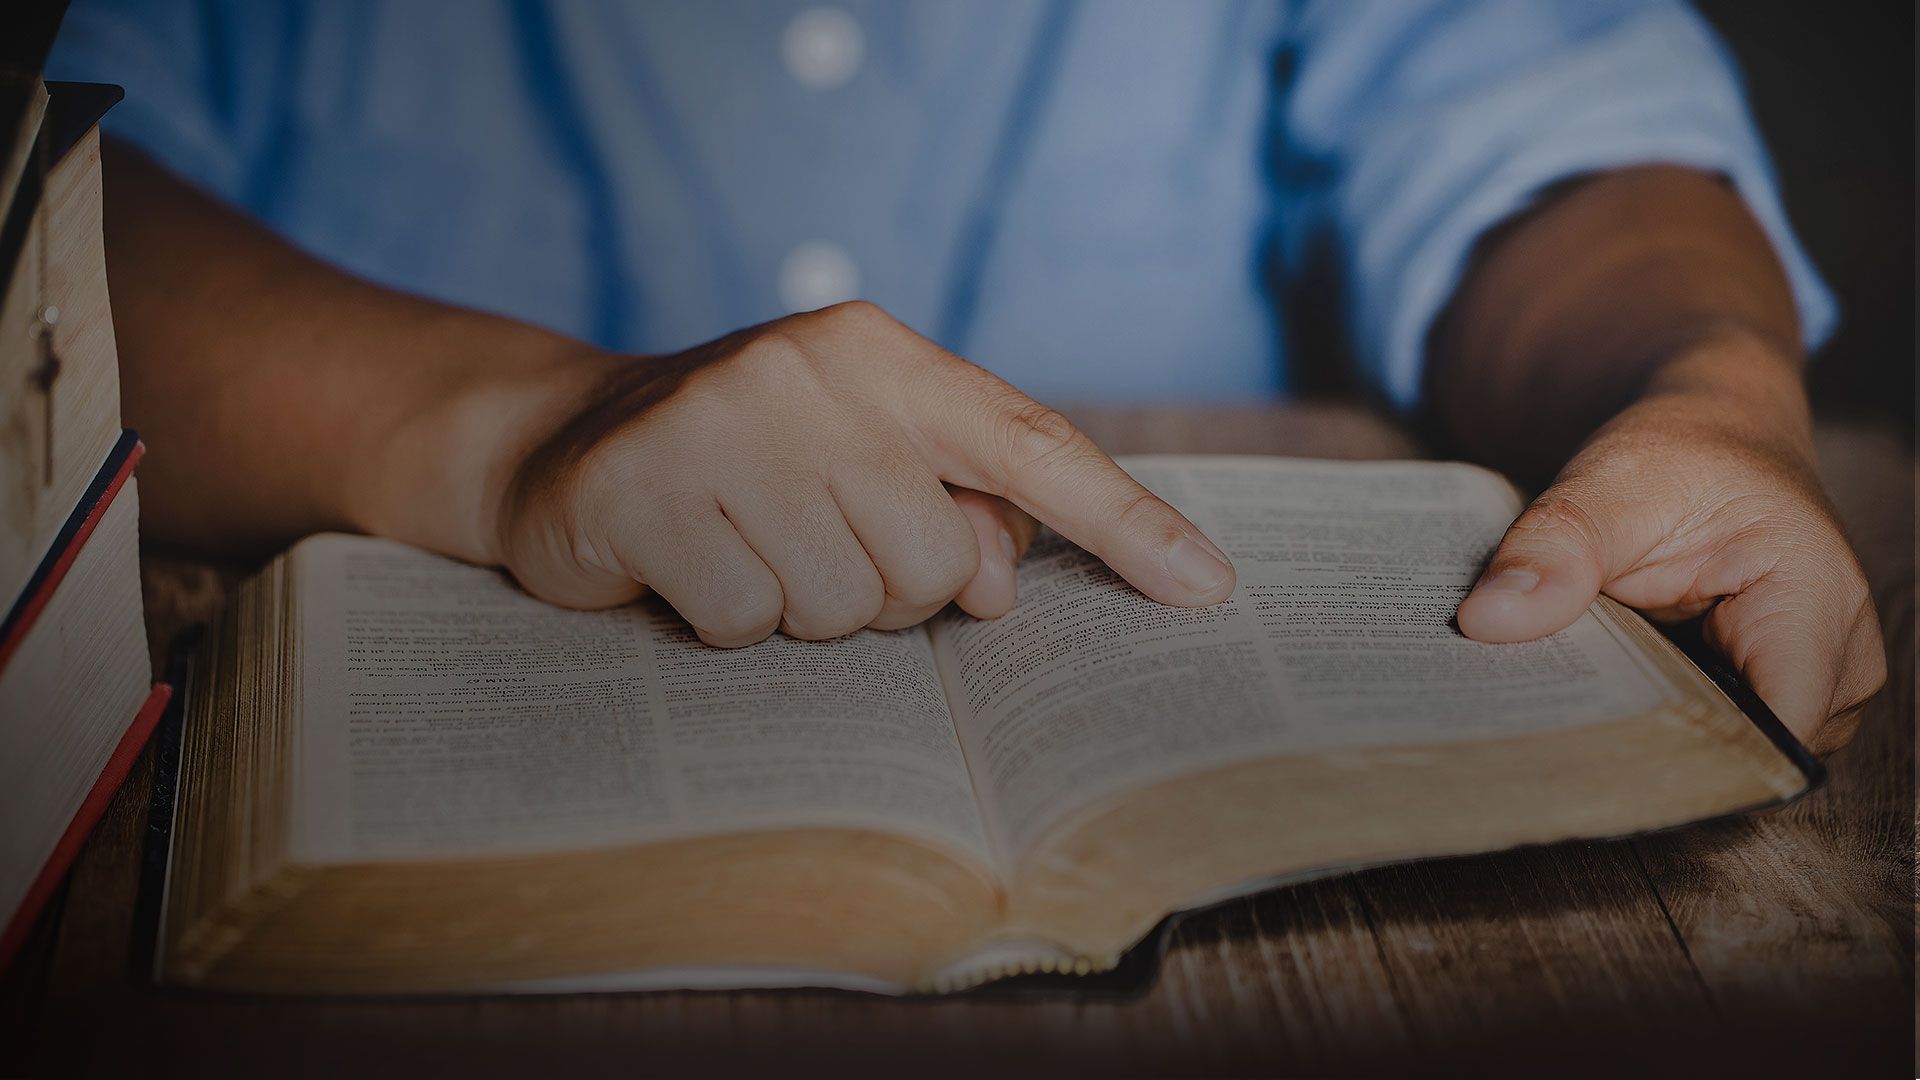 Promotional image for Какой способ изучения Библии наиболее эффективный?